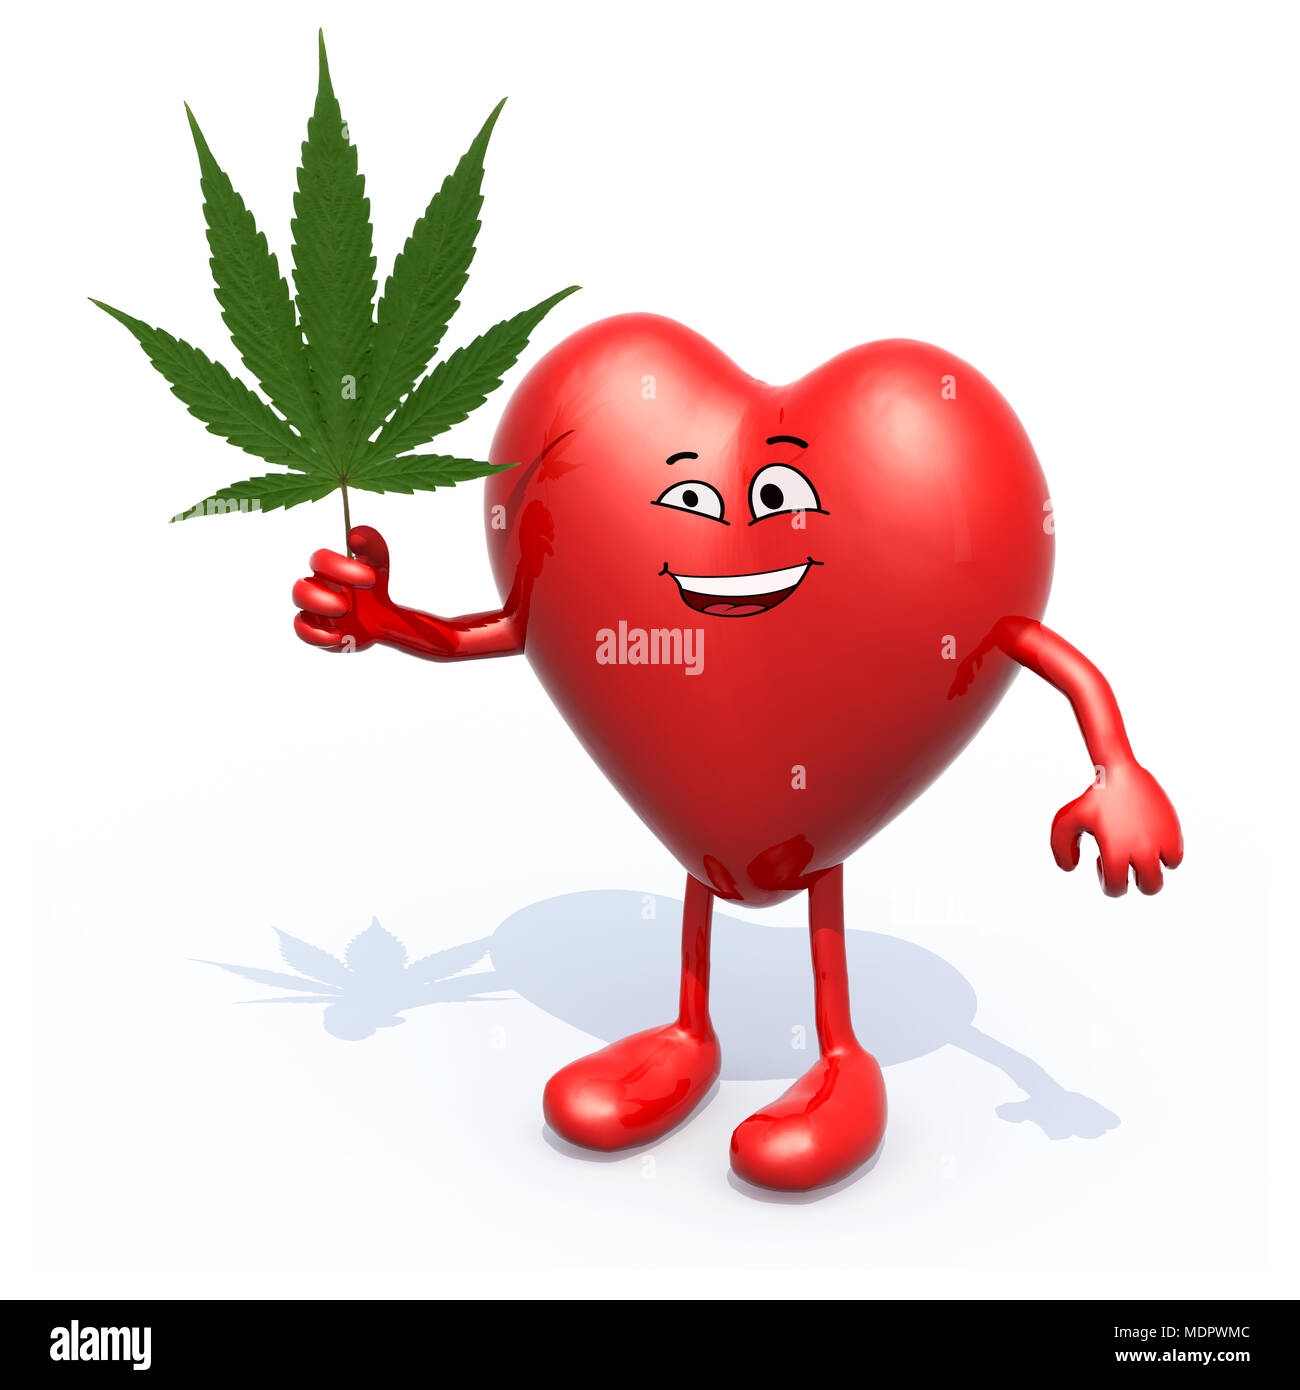 Weed Love Heart